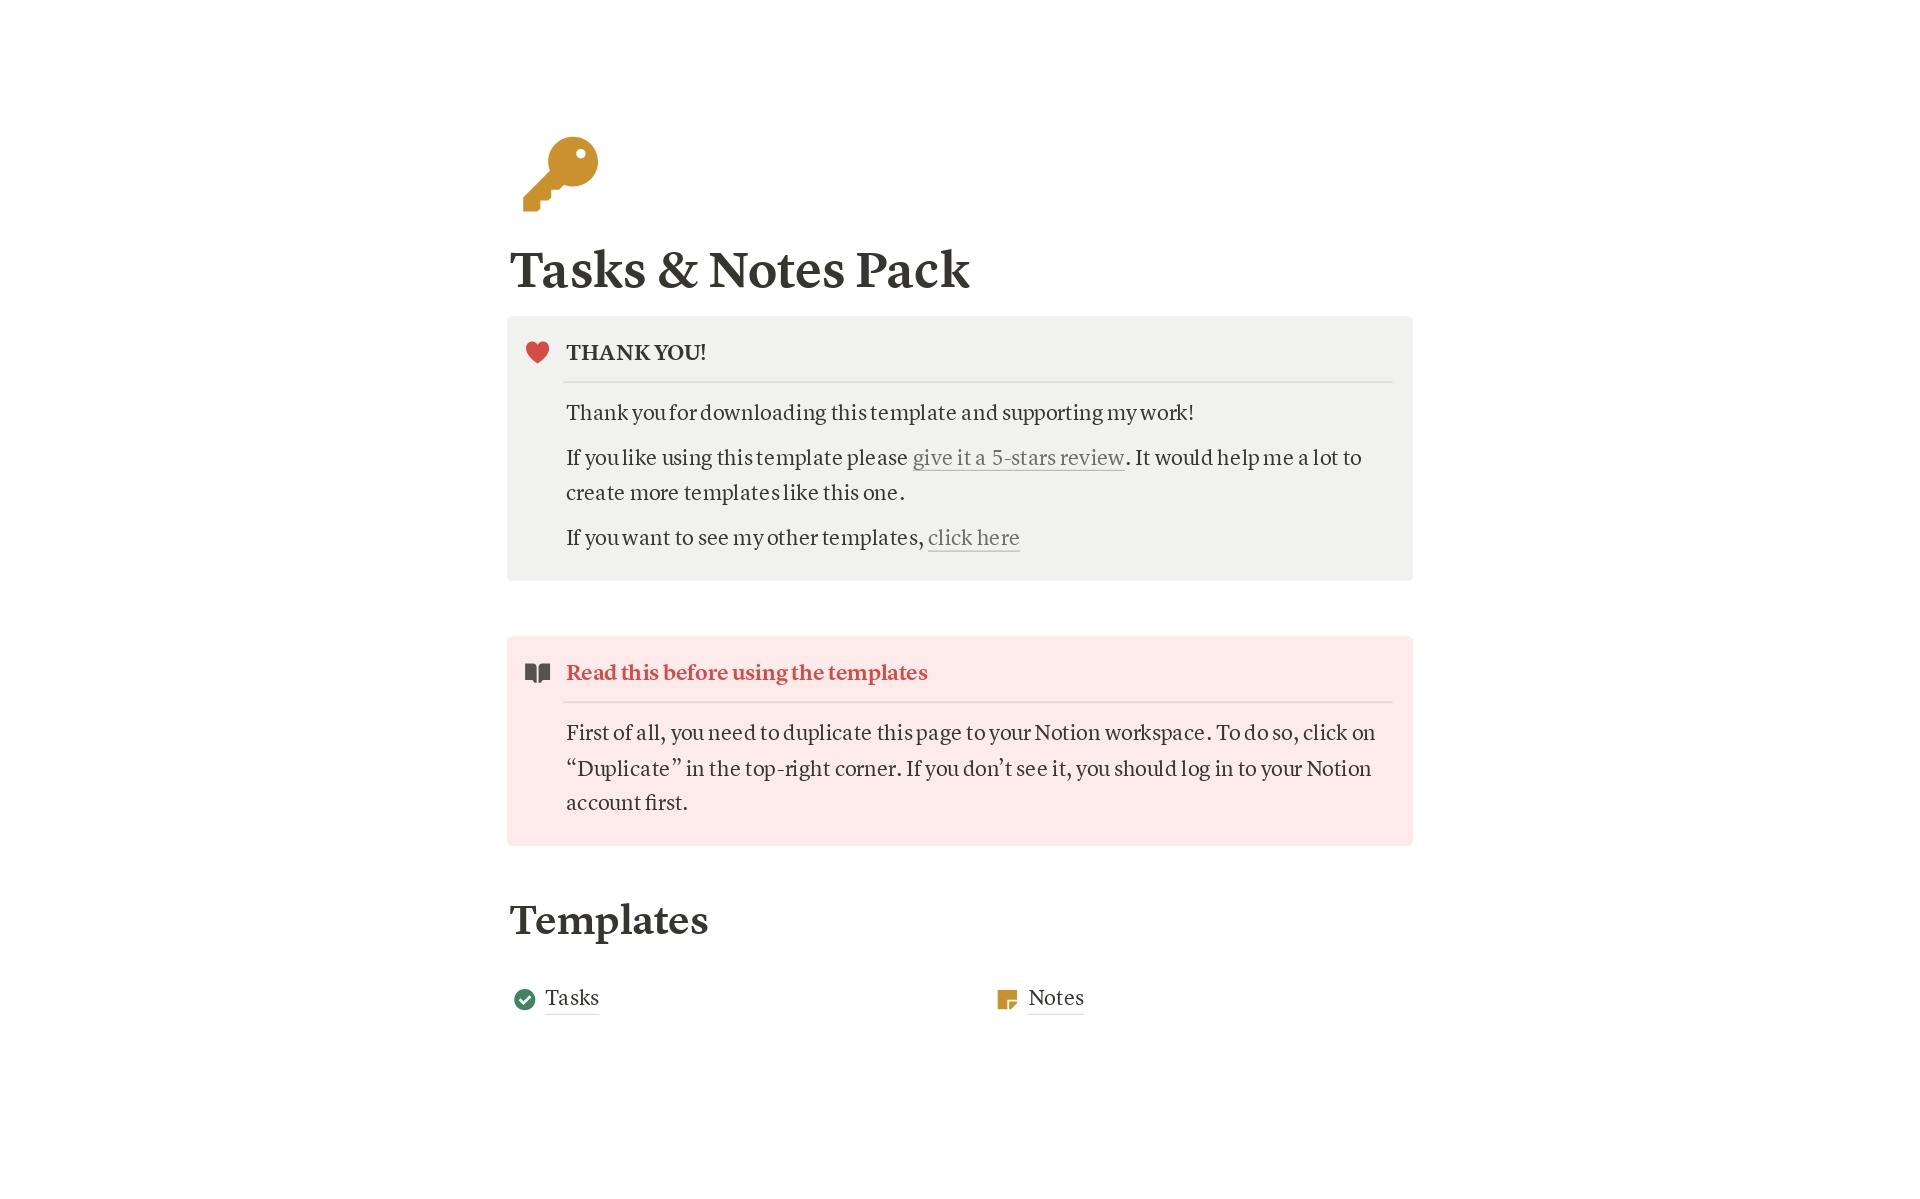 Aperçu du modèle de Tasks & Notes Pack